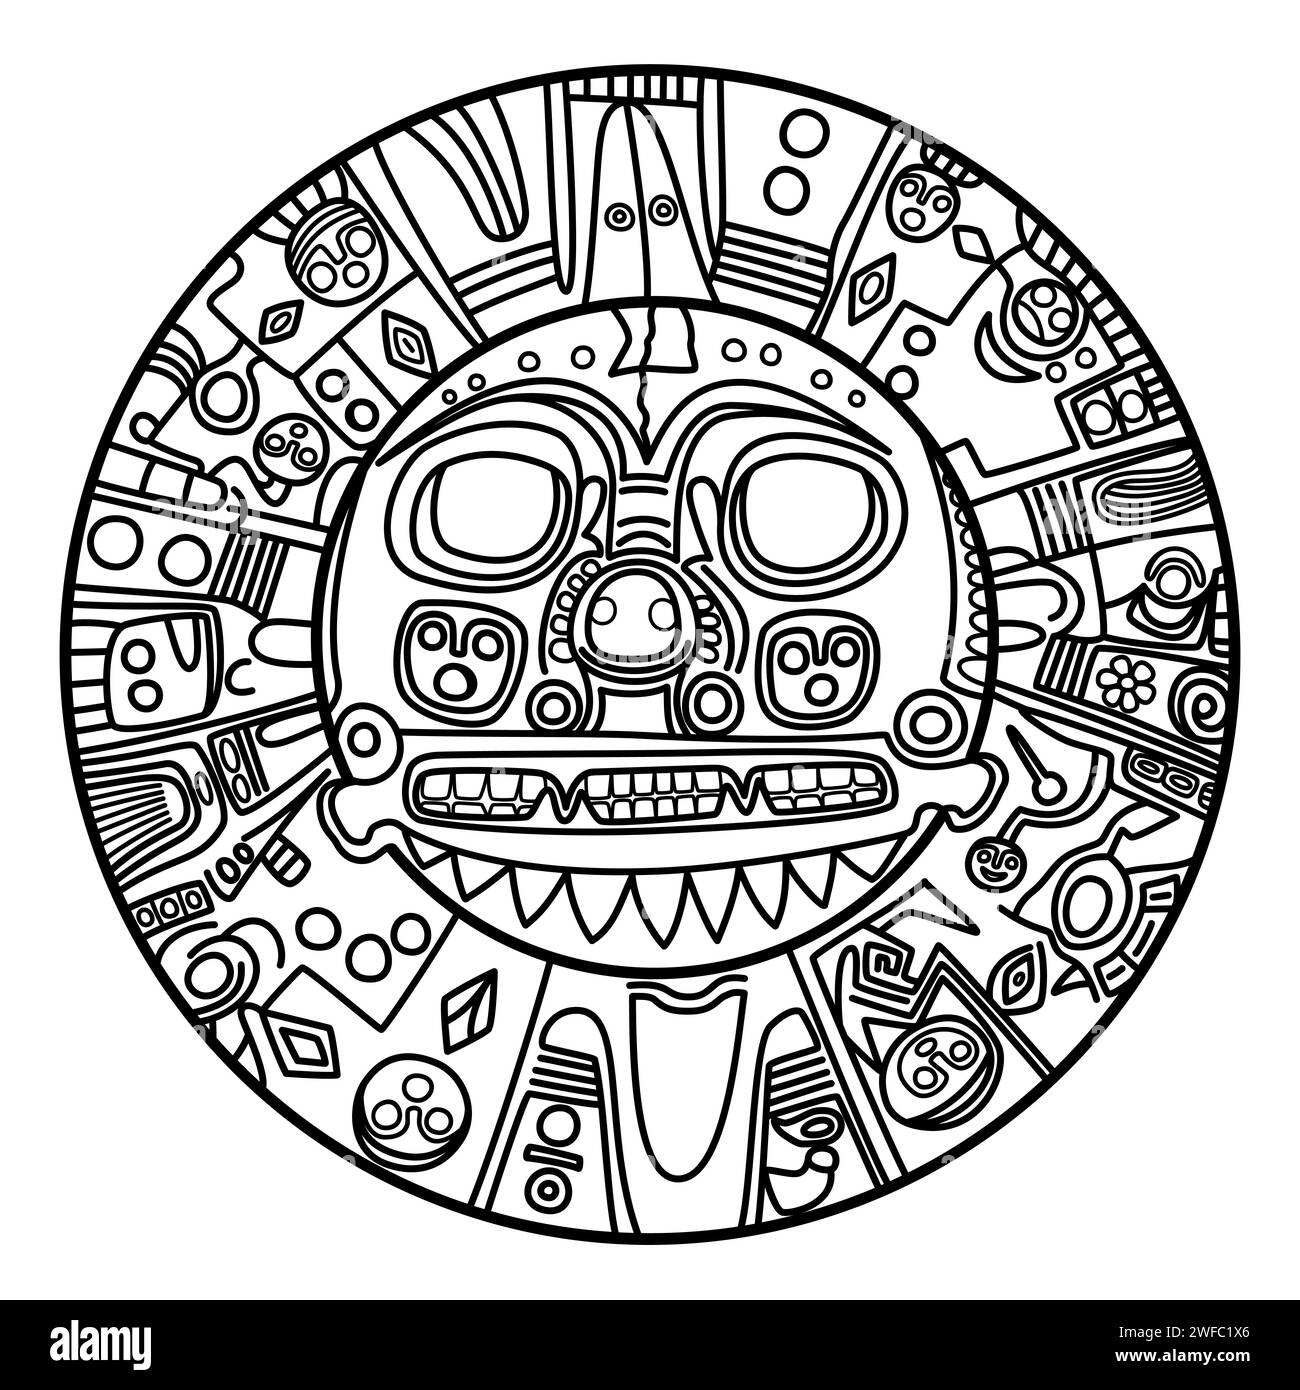 Goldene Sonne von Echenique. Prähispanische goldene Platte. Vielleicht repräsentiert er den Sonnengott Inti und wird von Inka-Herrschern als Brustpanzer getragen. Wappen von Cusco. Stockfoto